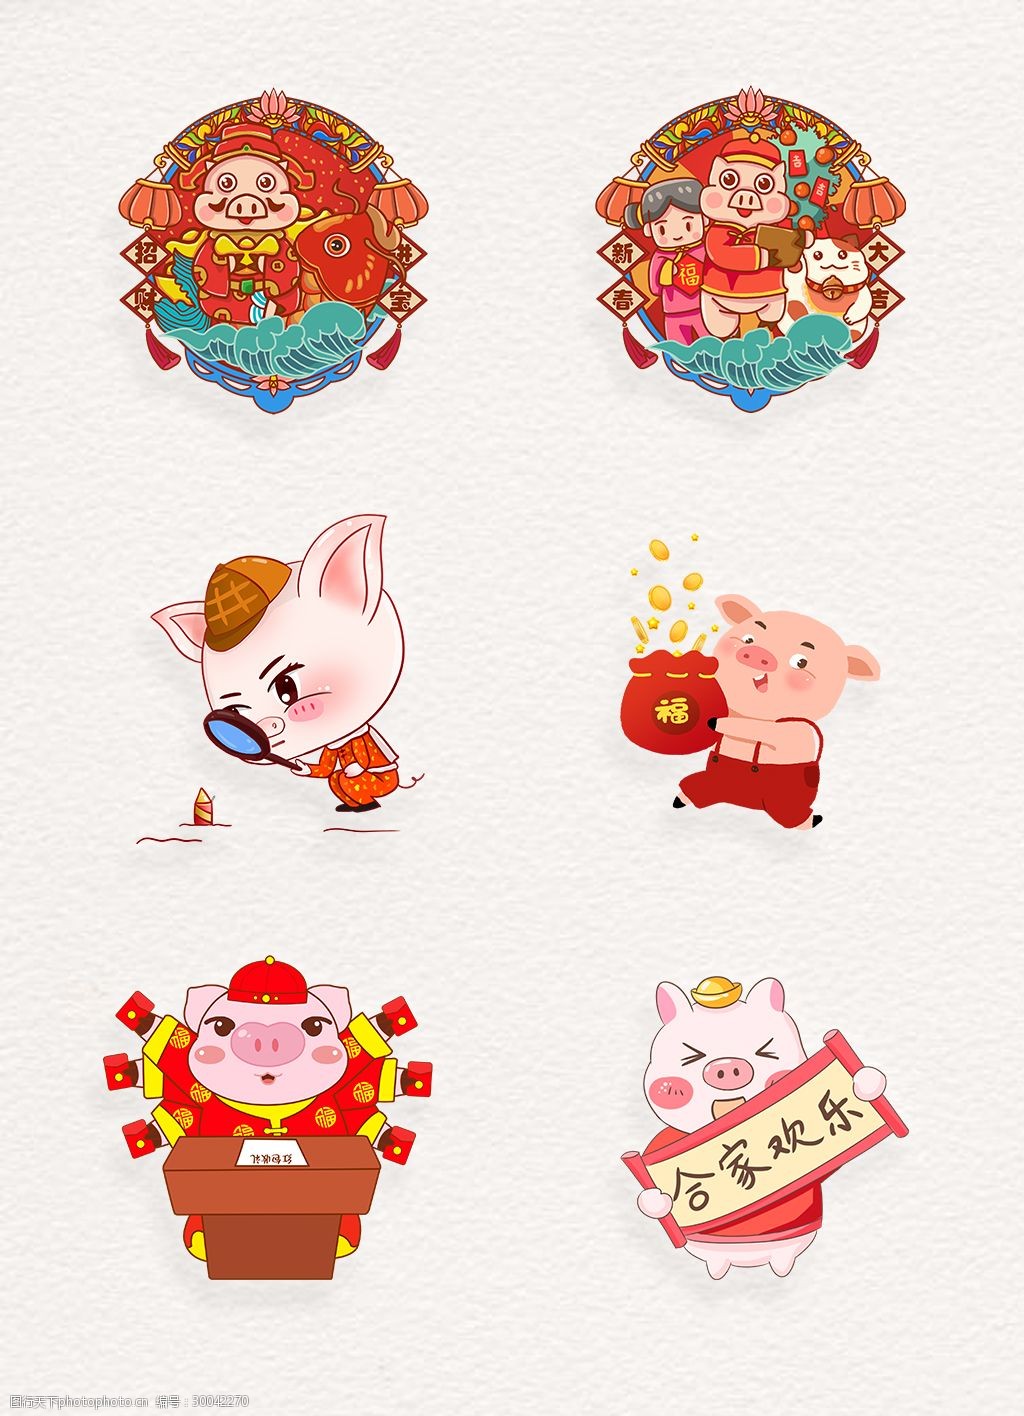 关键词:2019春节喜庆卡通小猪元素设计 喜庆 春节 中国风 可爱 卡通